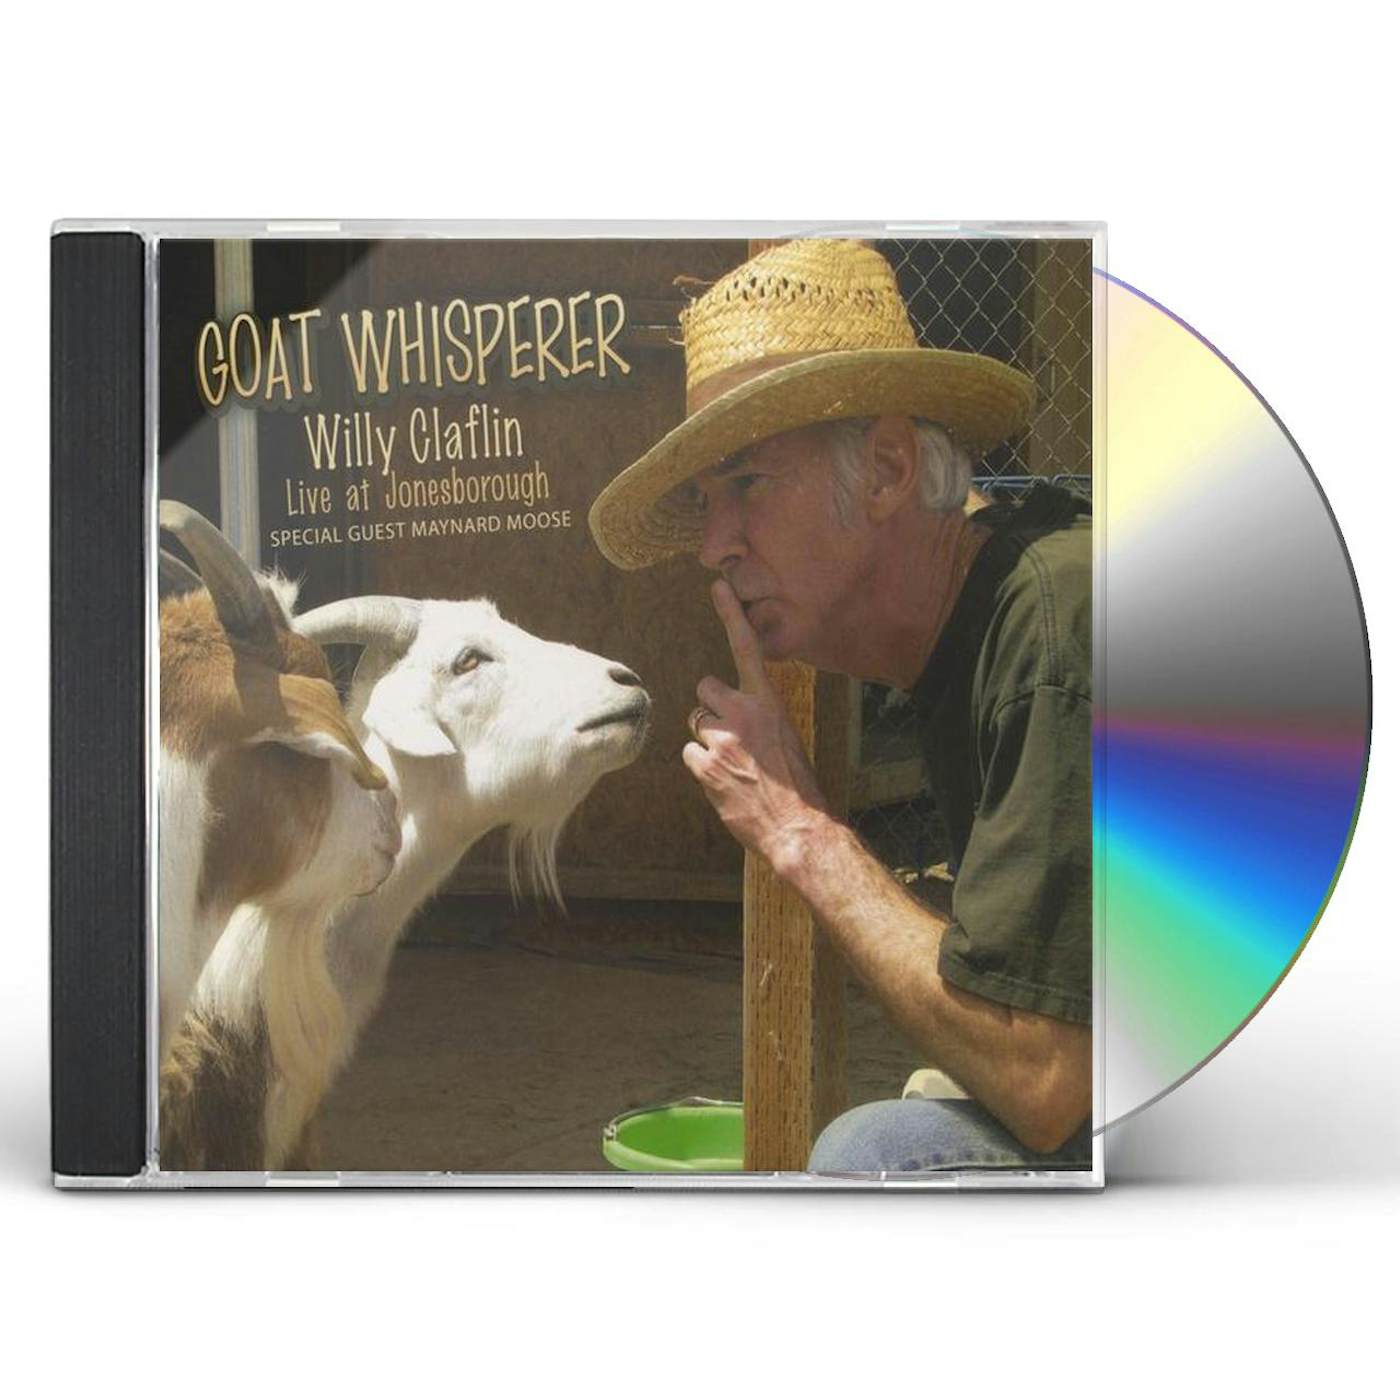 GOAT WHISPERER: WILLY CLAFLIN LIVE AT JONESBOROUG CD